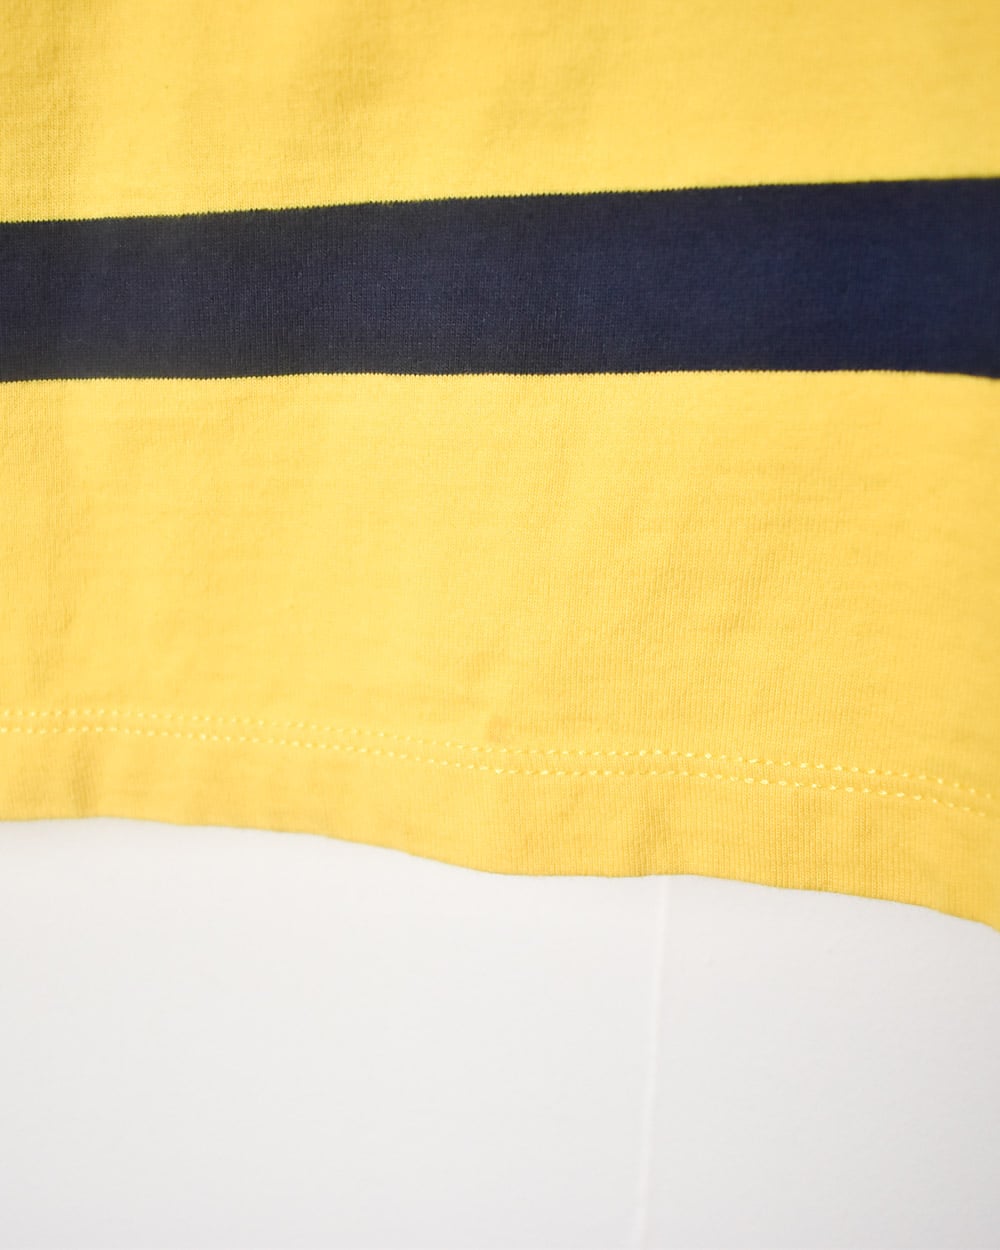 Yellow Polo Ralph Lauren Rugby Shirt - Medium Women's